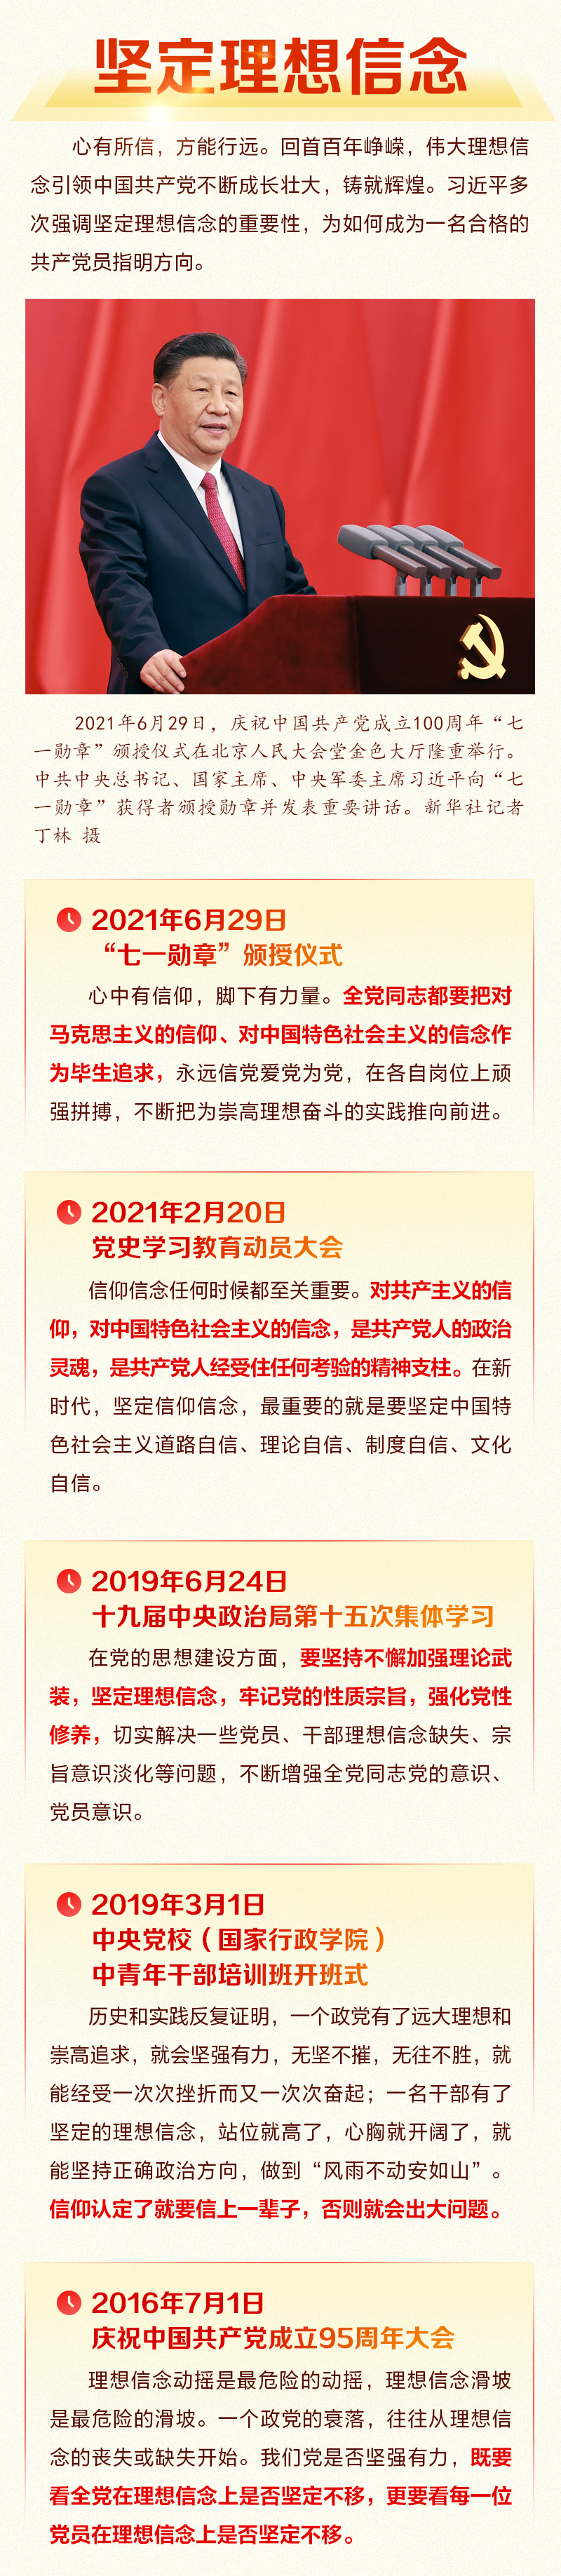 2全体中国共产党员要牢记 人民网-中国共产党新闻网.jpg